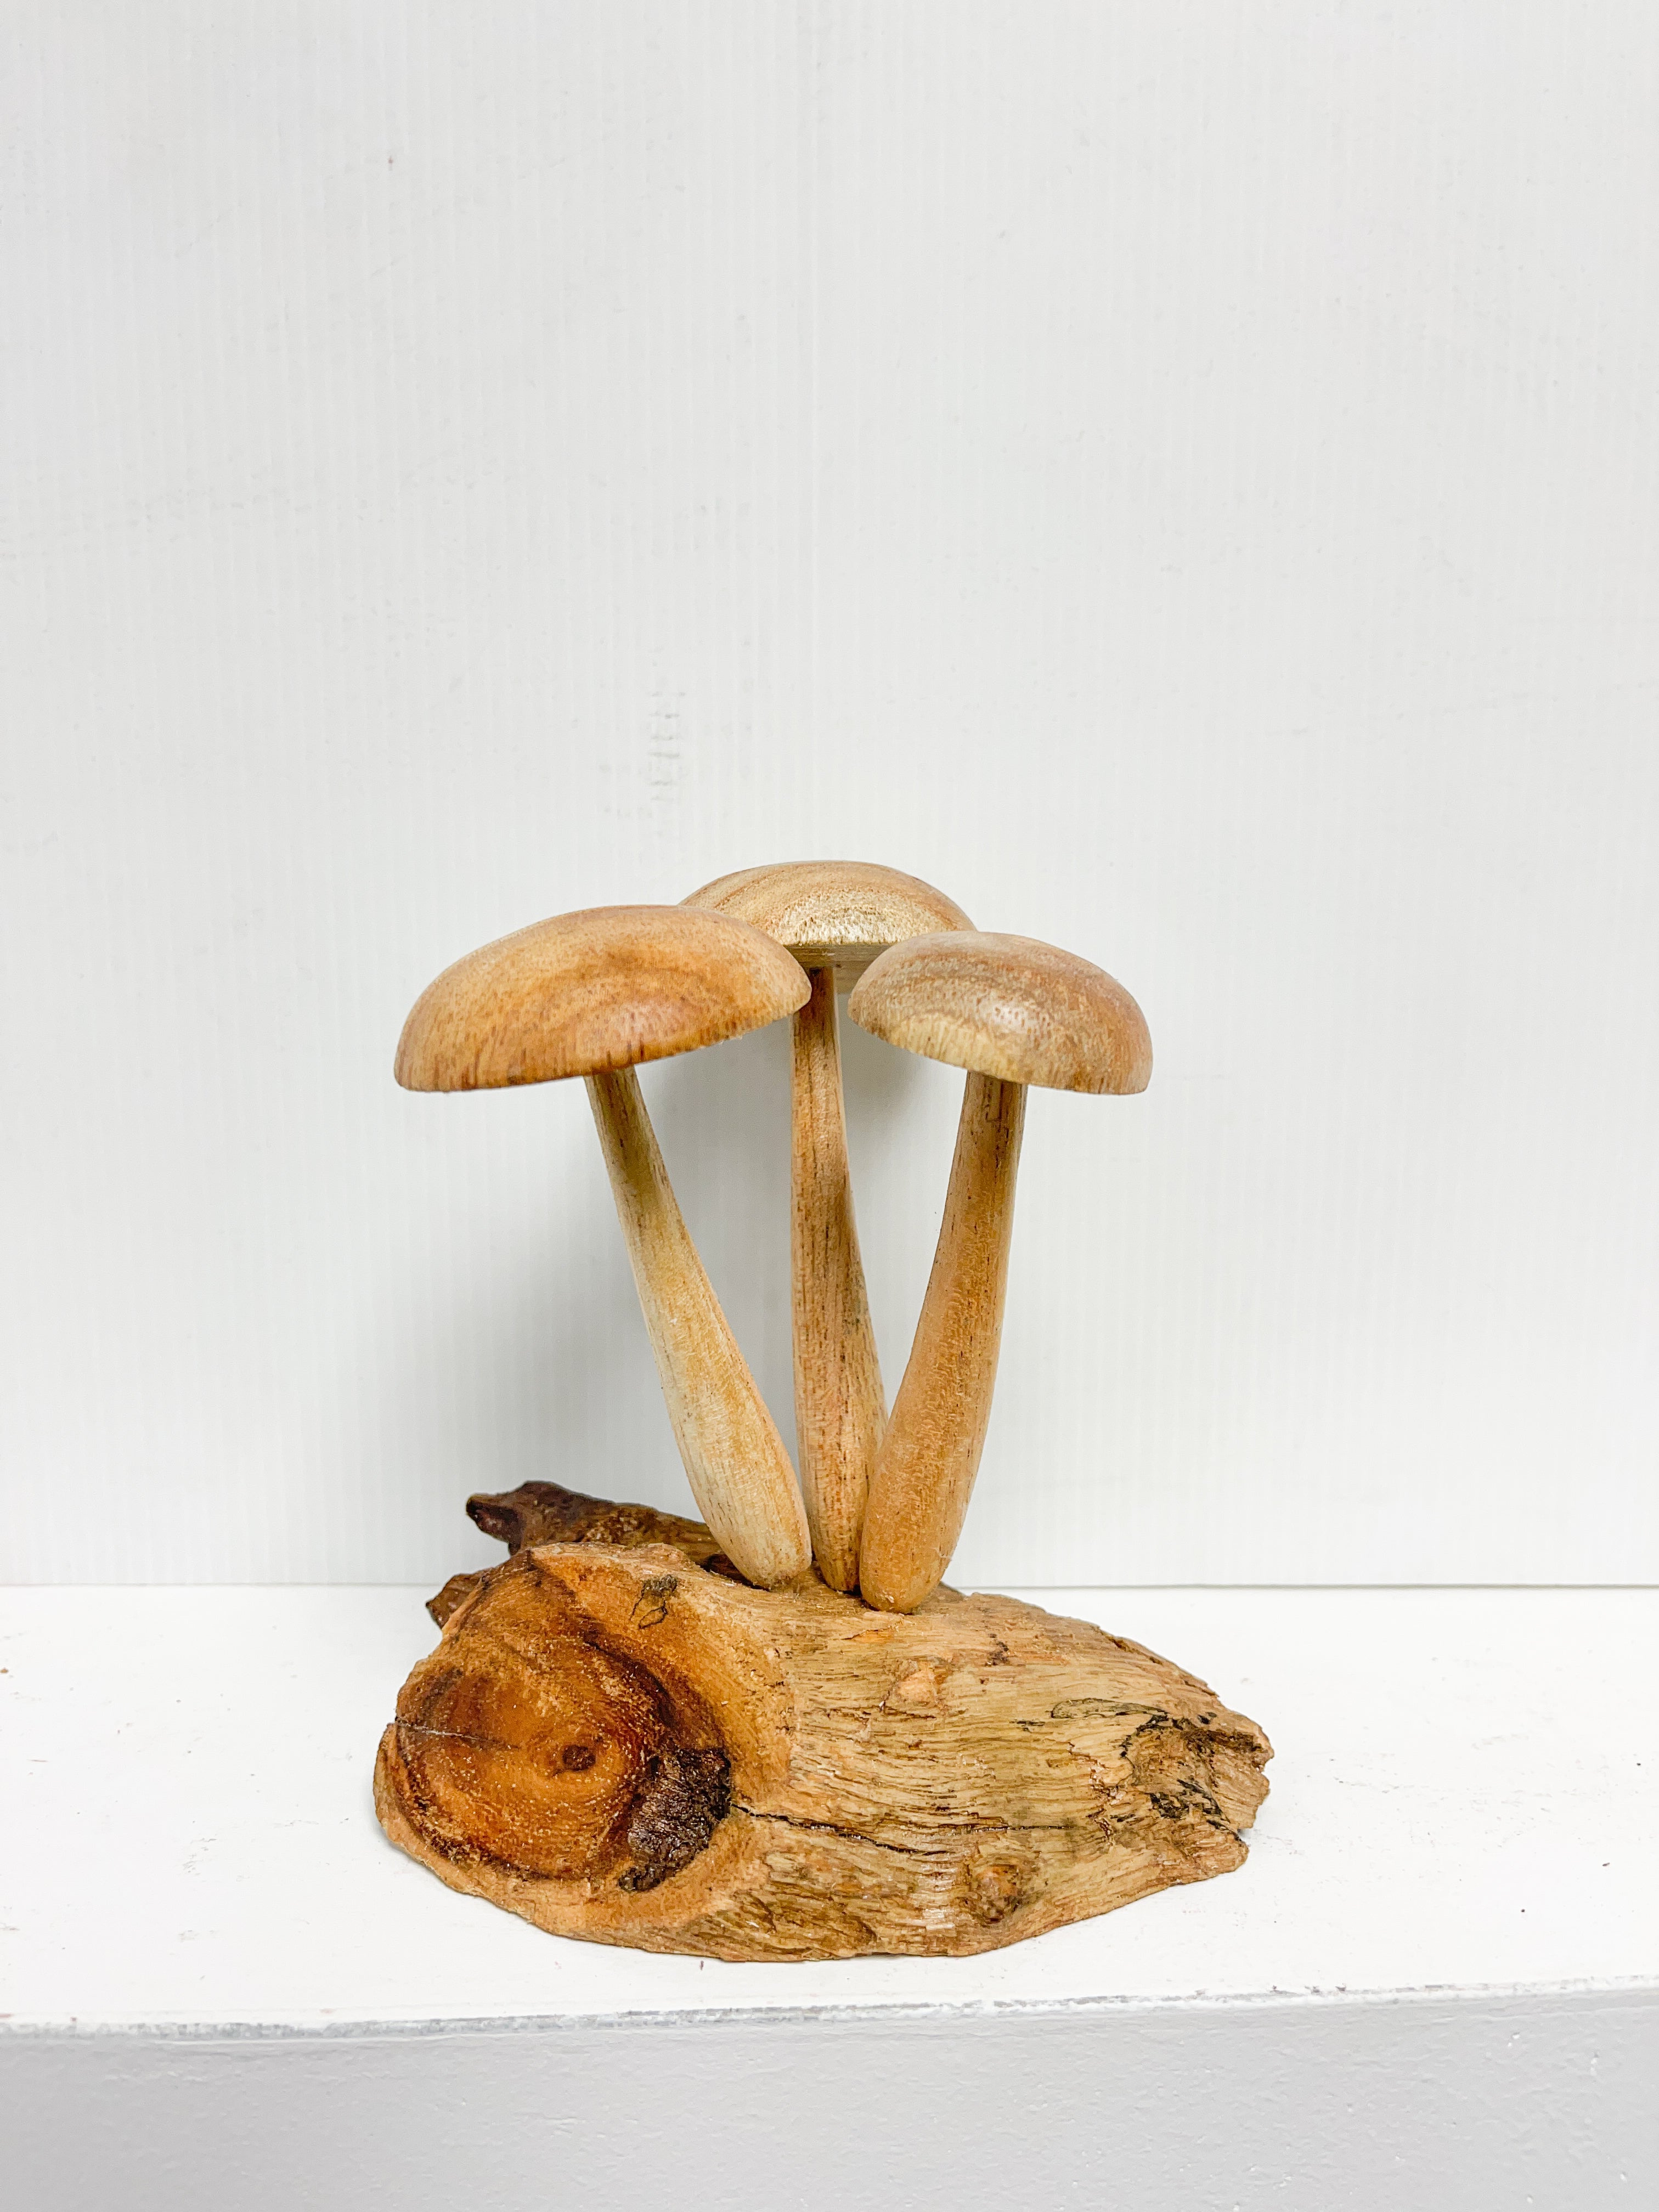 Mushrooms Toadstools Group of Three on Log Wood